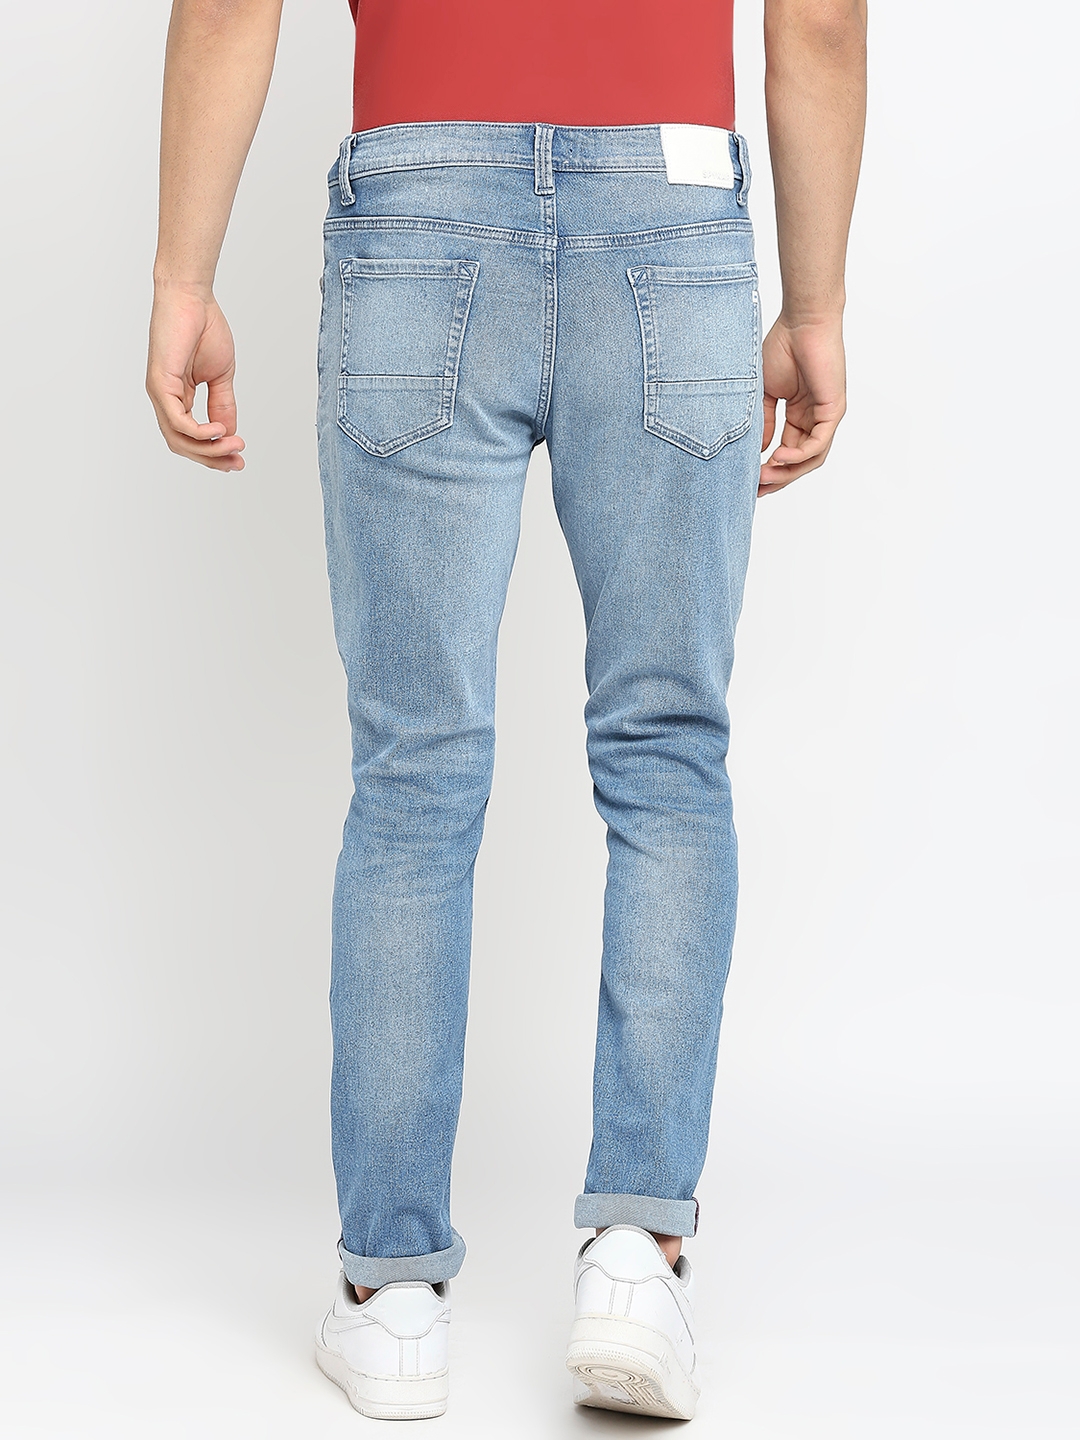 Spykar | Men's Blue Cotton Solid Jeans 3